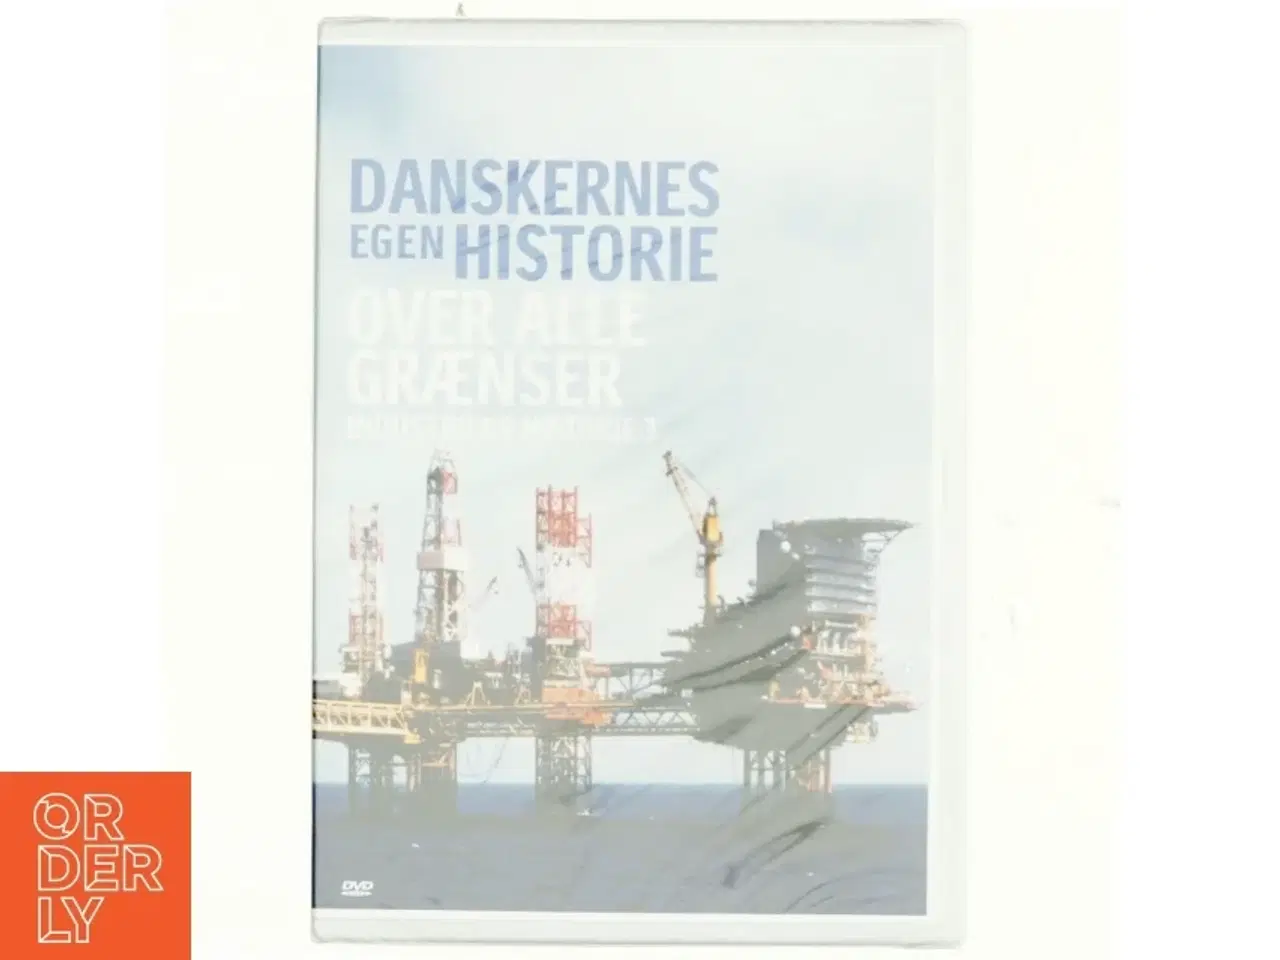 Billede 1 - Danskernes egen historie, over alle grænser